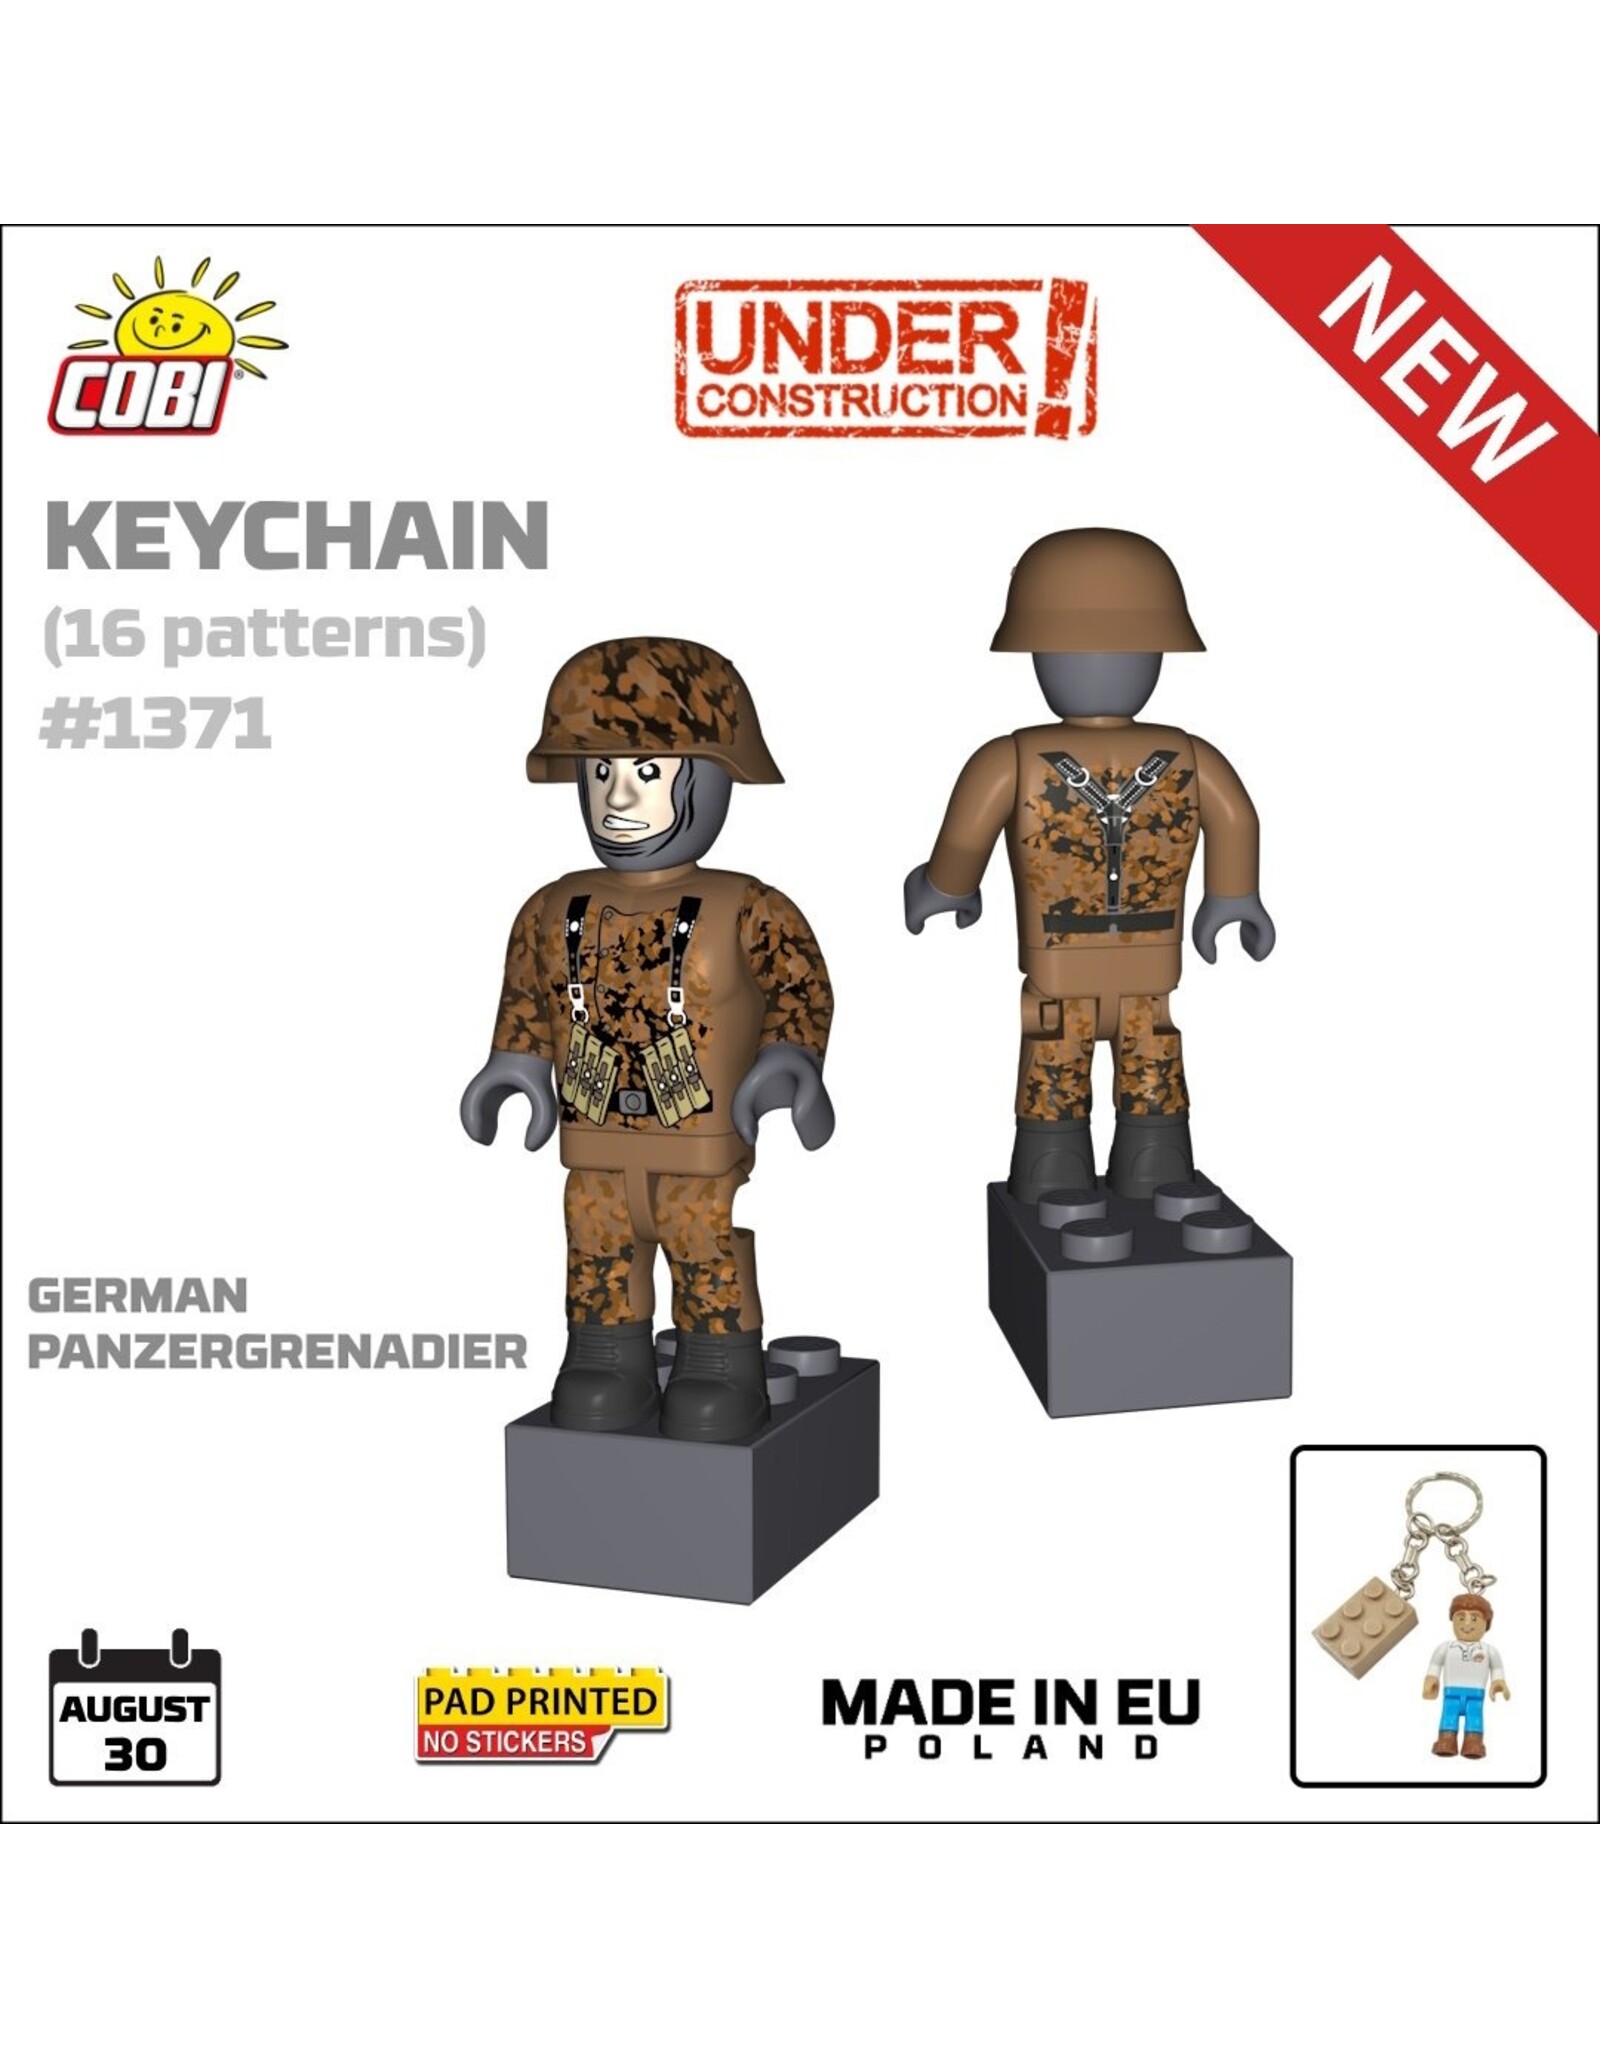 COBI COBI 1371 Keychain German Panzergrenadier